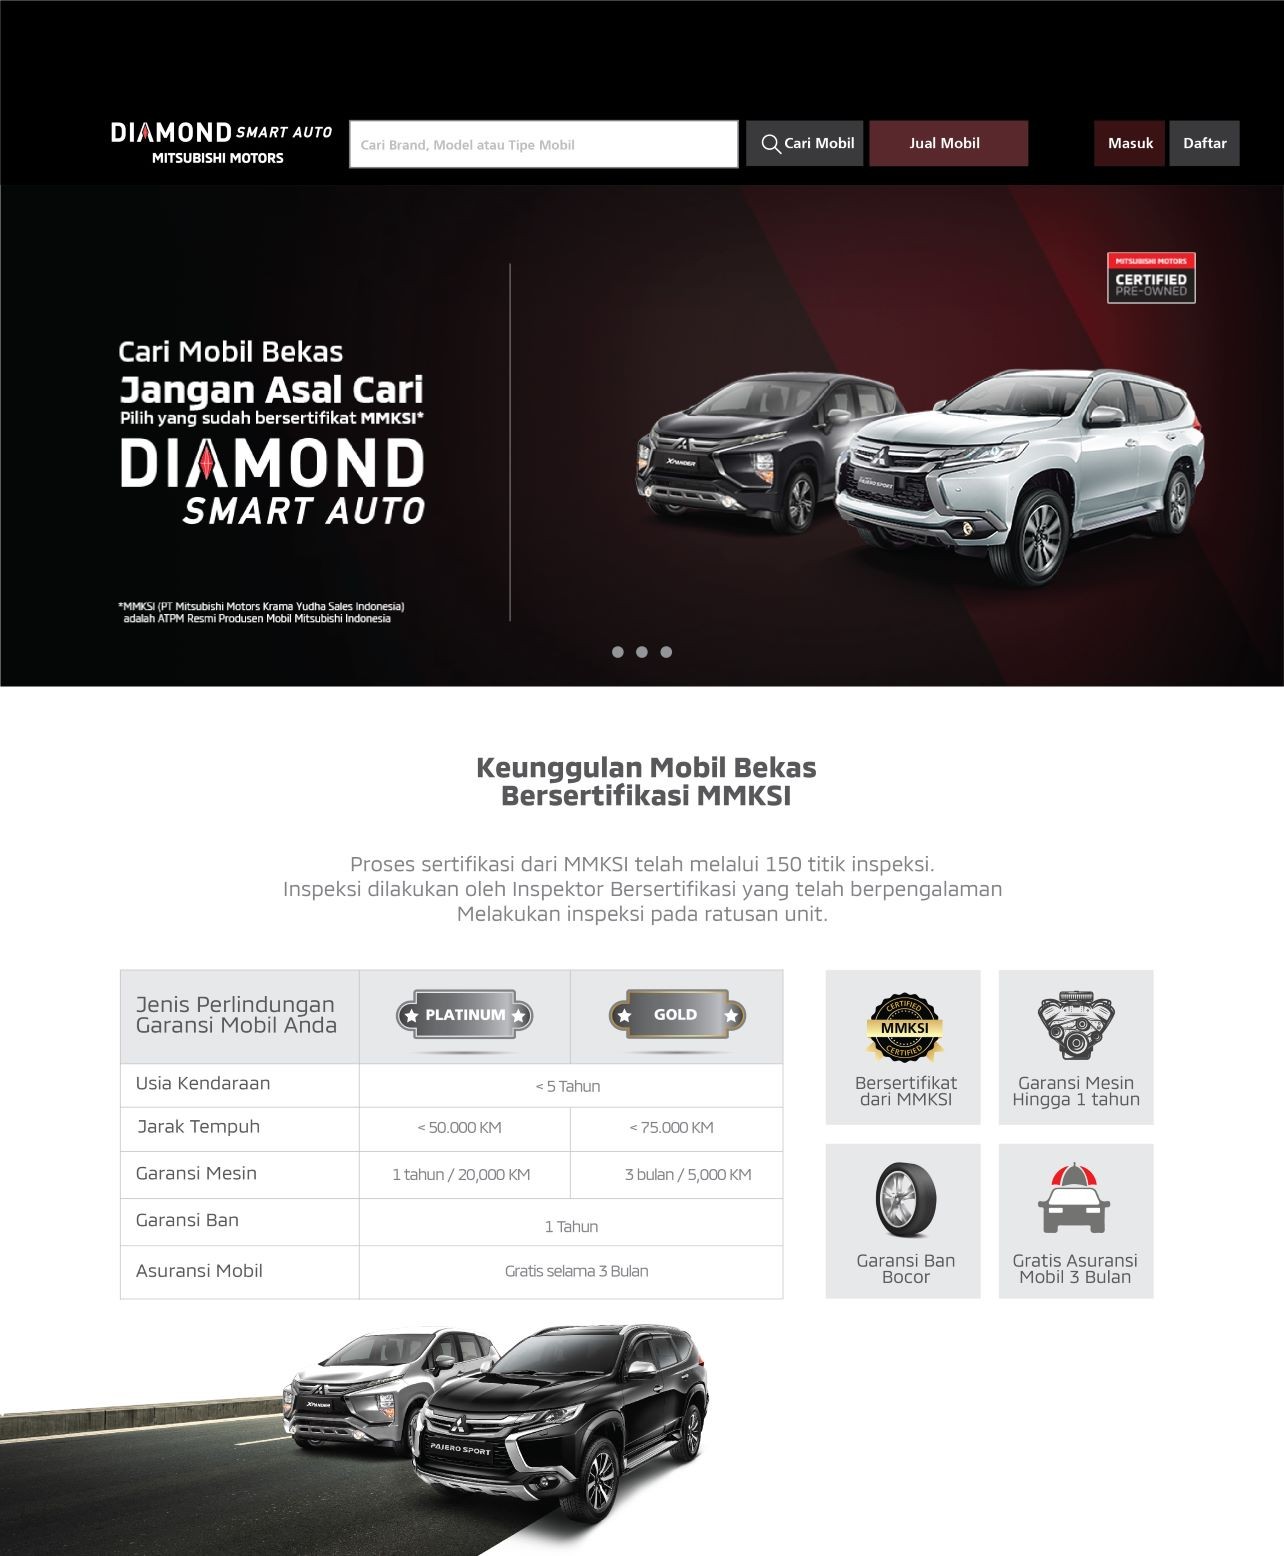 MMKSI Luncurkan Layanan Jual Beli Mobil Bekas Bersertifikat Diamond Smart Auto